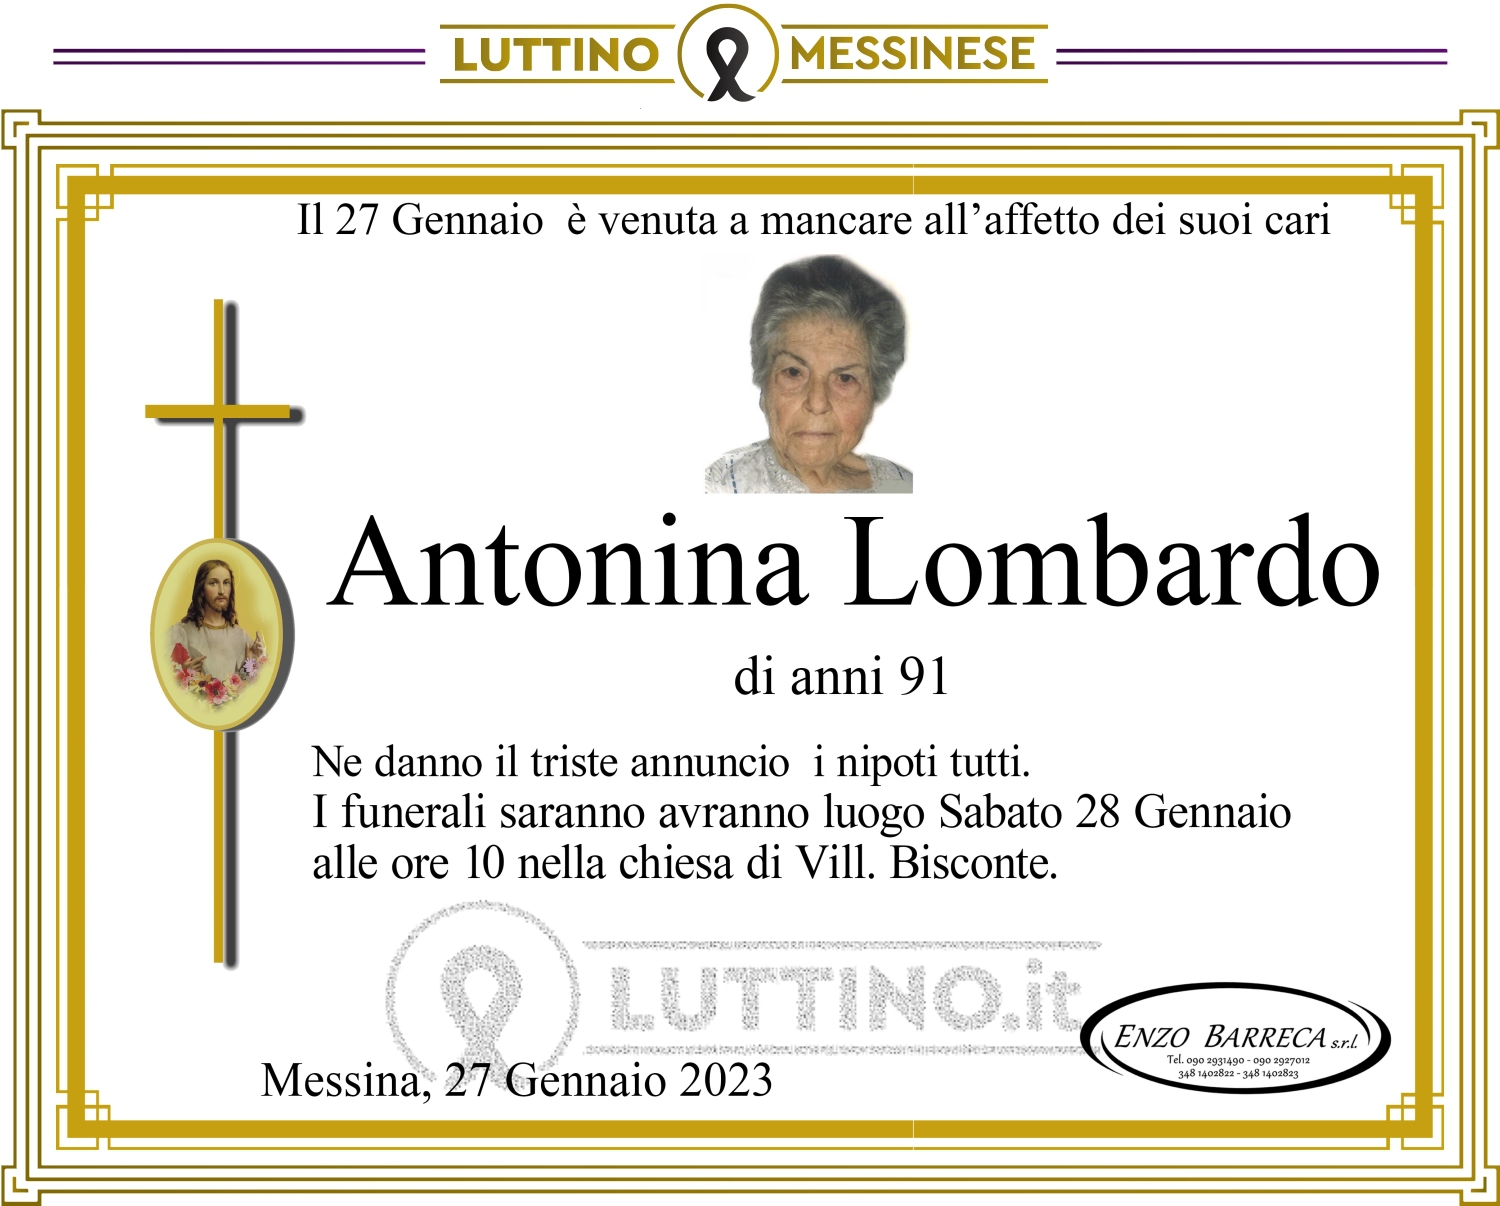 Antonina Lombardo